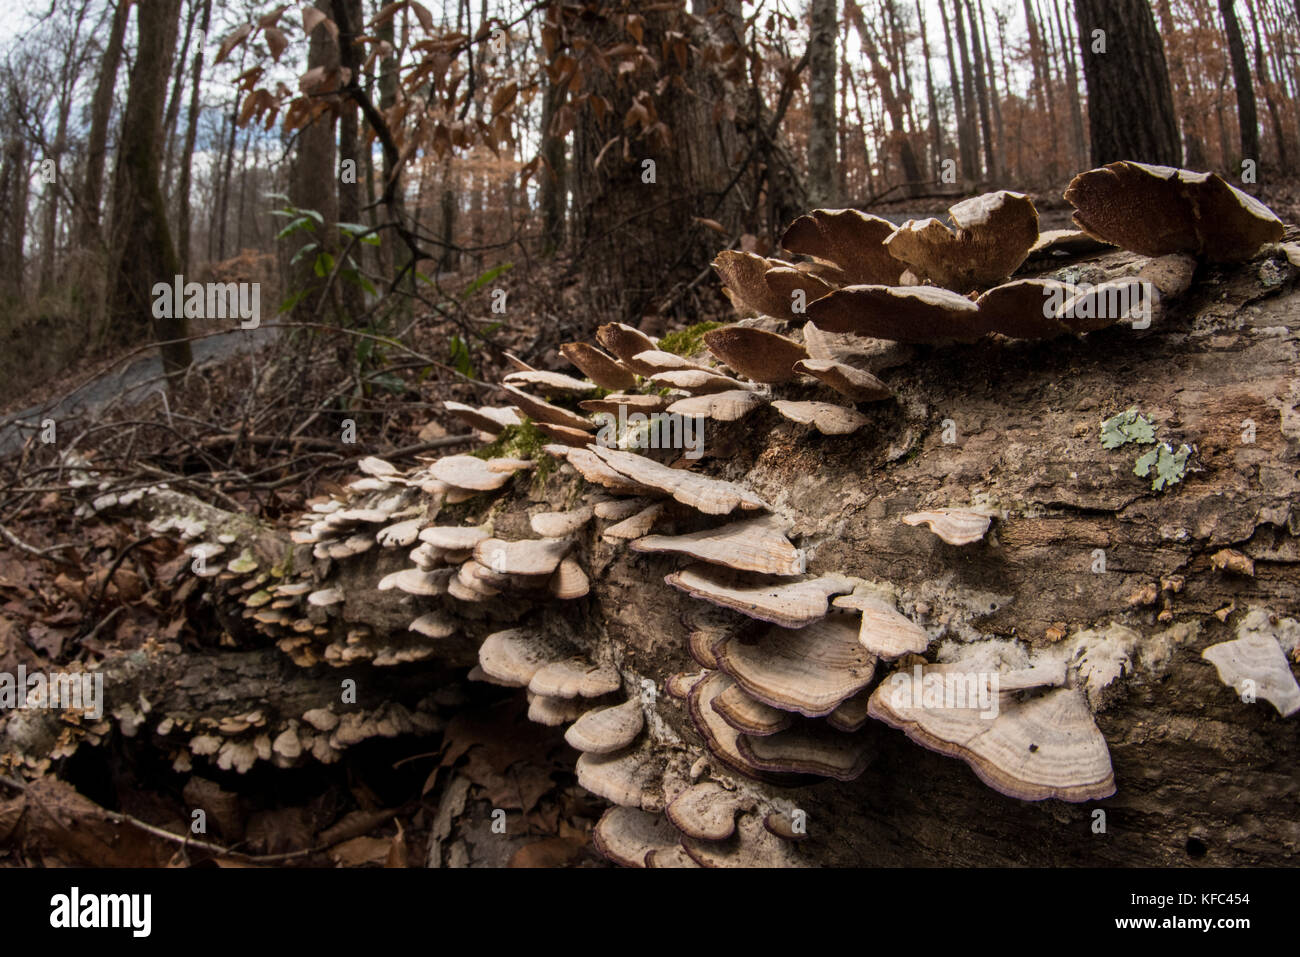 Shelf mushrooms growing on a fallen tree in Georgia, USA. Stock Photo